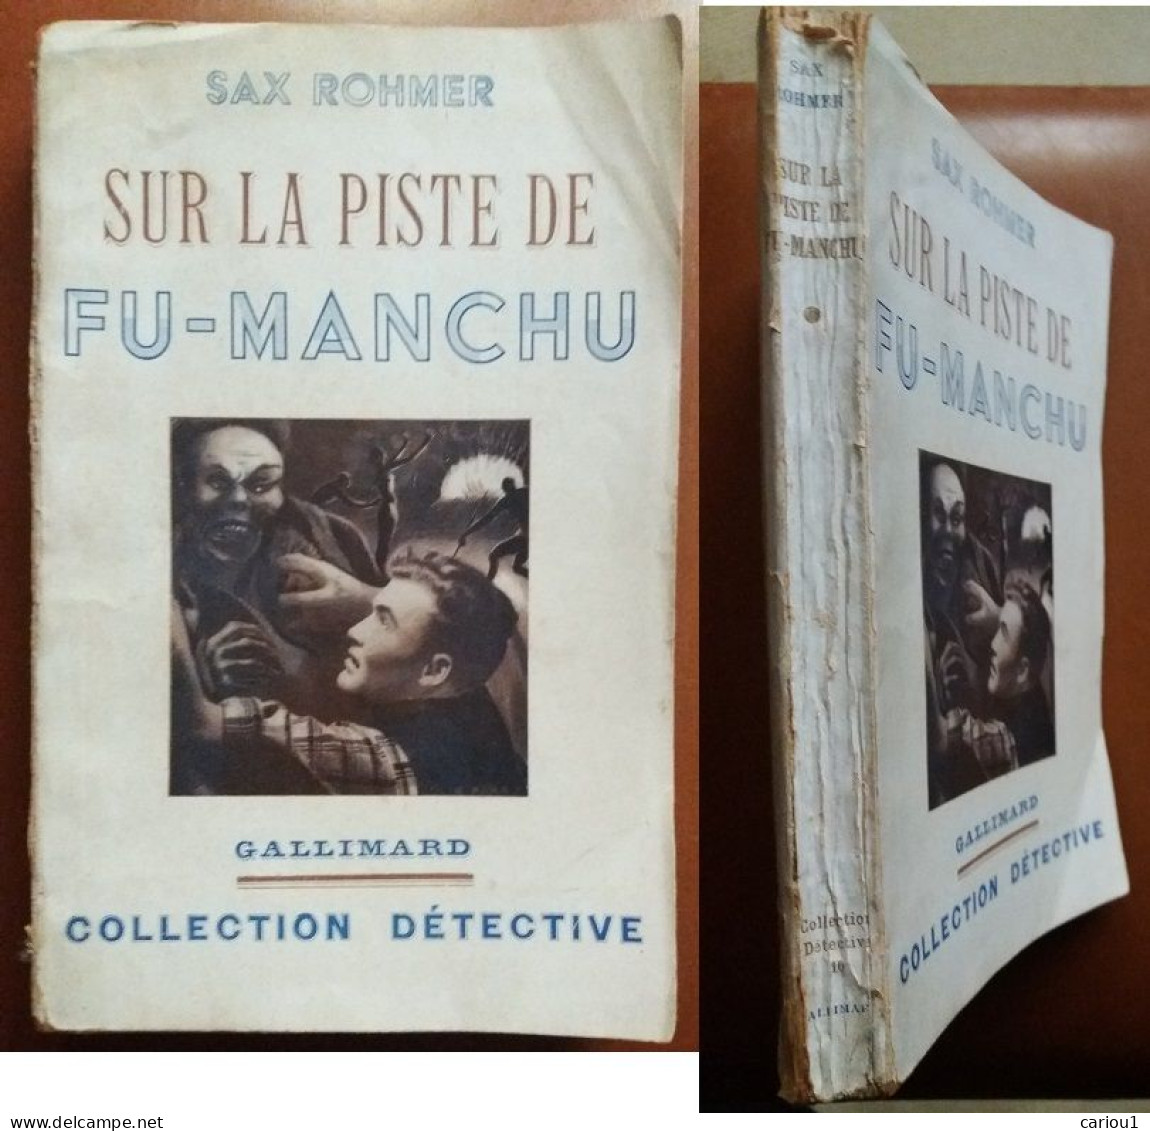 C1 Sax ROHMER - SUR LA PISTE DE FU MANCHU EO 1938 The Trail Of Fu Manchu SF PORT INCLUS France - SF-Romane Vor 1950